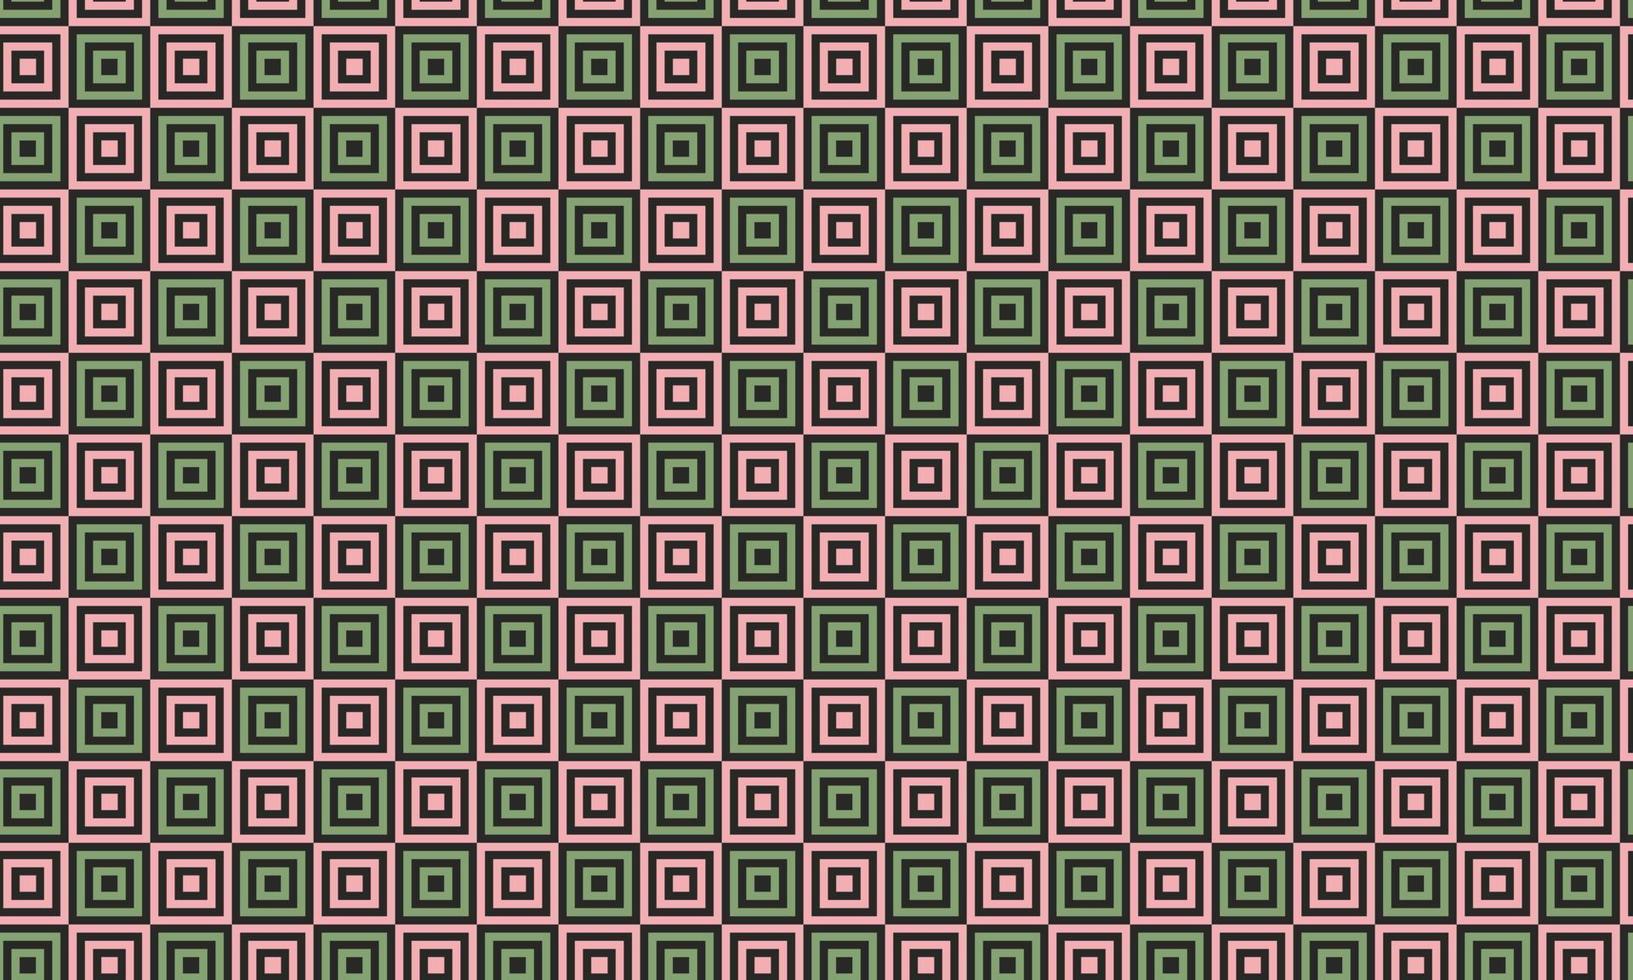 padrão sem emenda geométrico abstrato com quadrados rosa e verdes sobre fundo preto. design de vetor de linha de minimalismo simples na moda